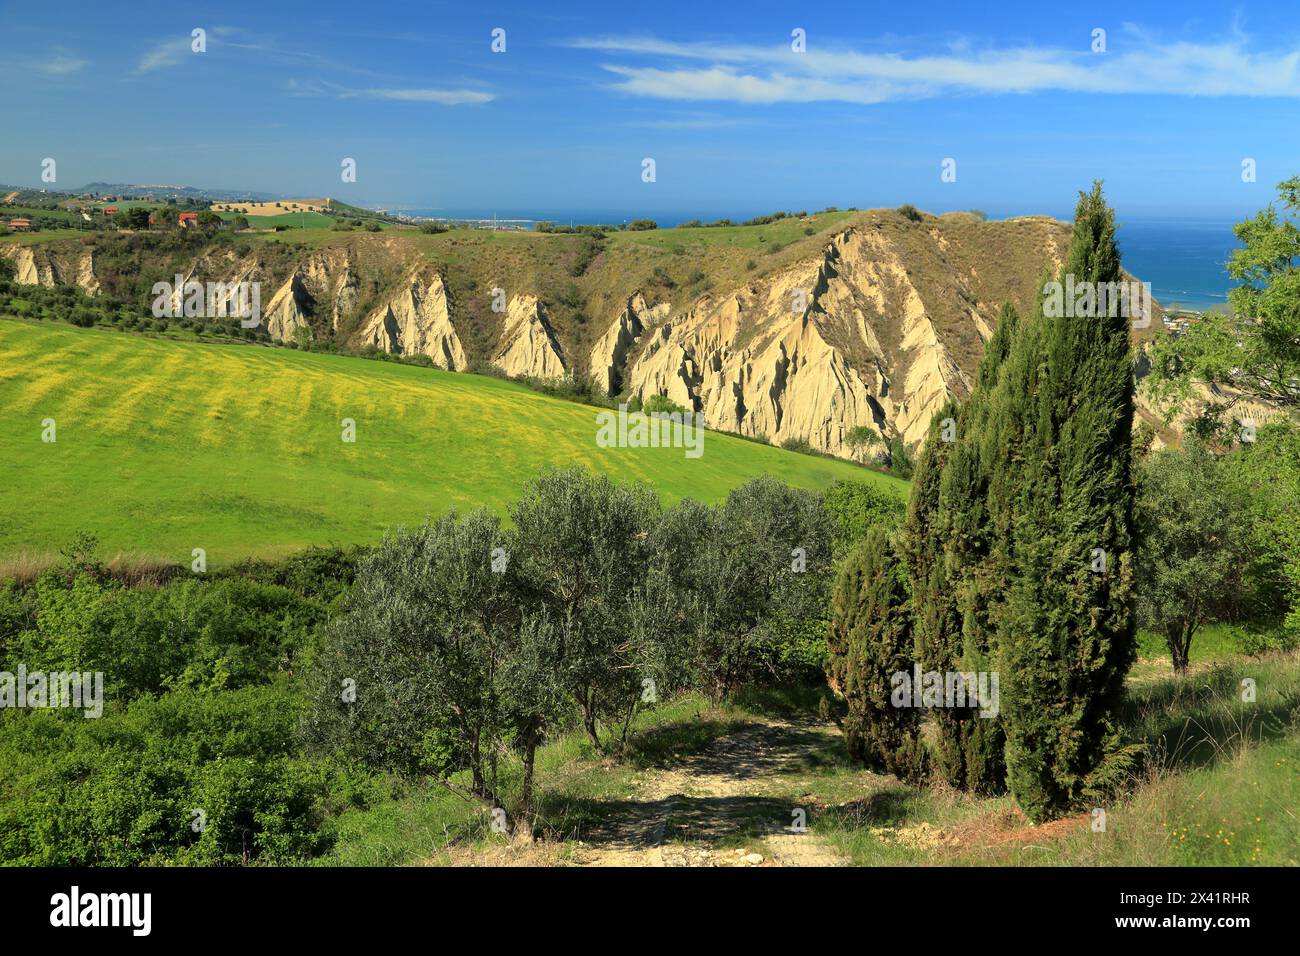 Badlands 'Calanchi delle Pullette', near Montepagano, Roseto degli Abruzzi, Abruzzo, Italy Stock Photo